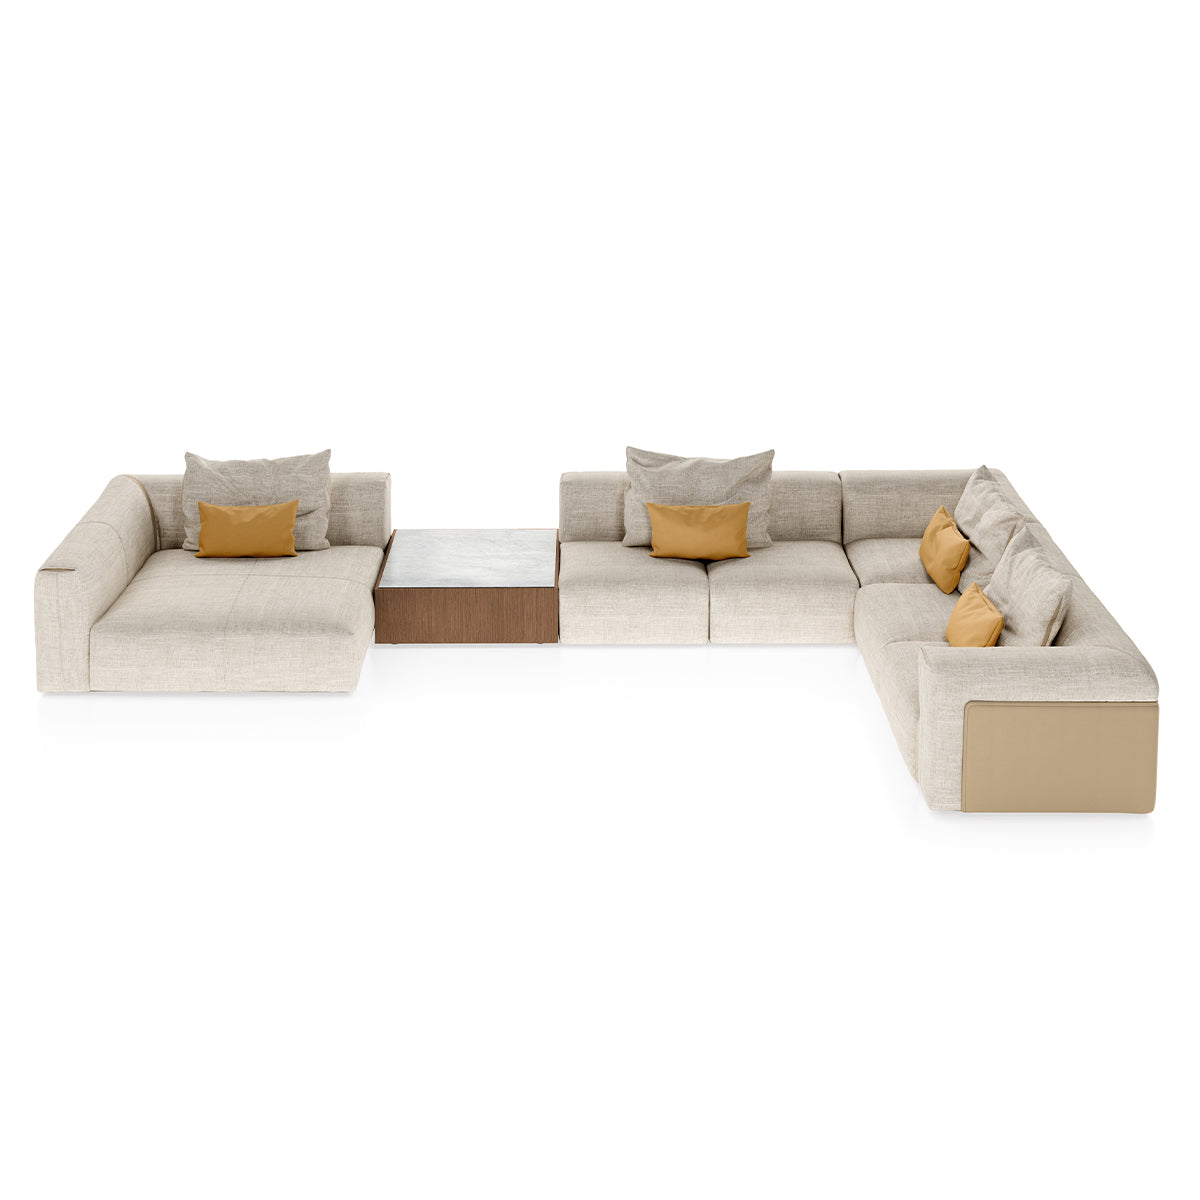 Turri Soul Modular Sofa